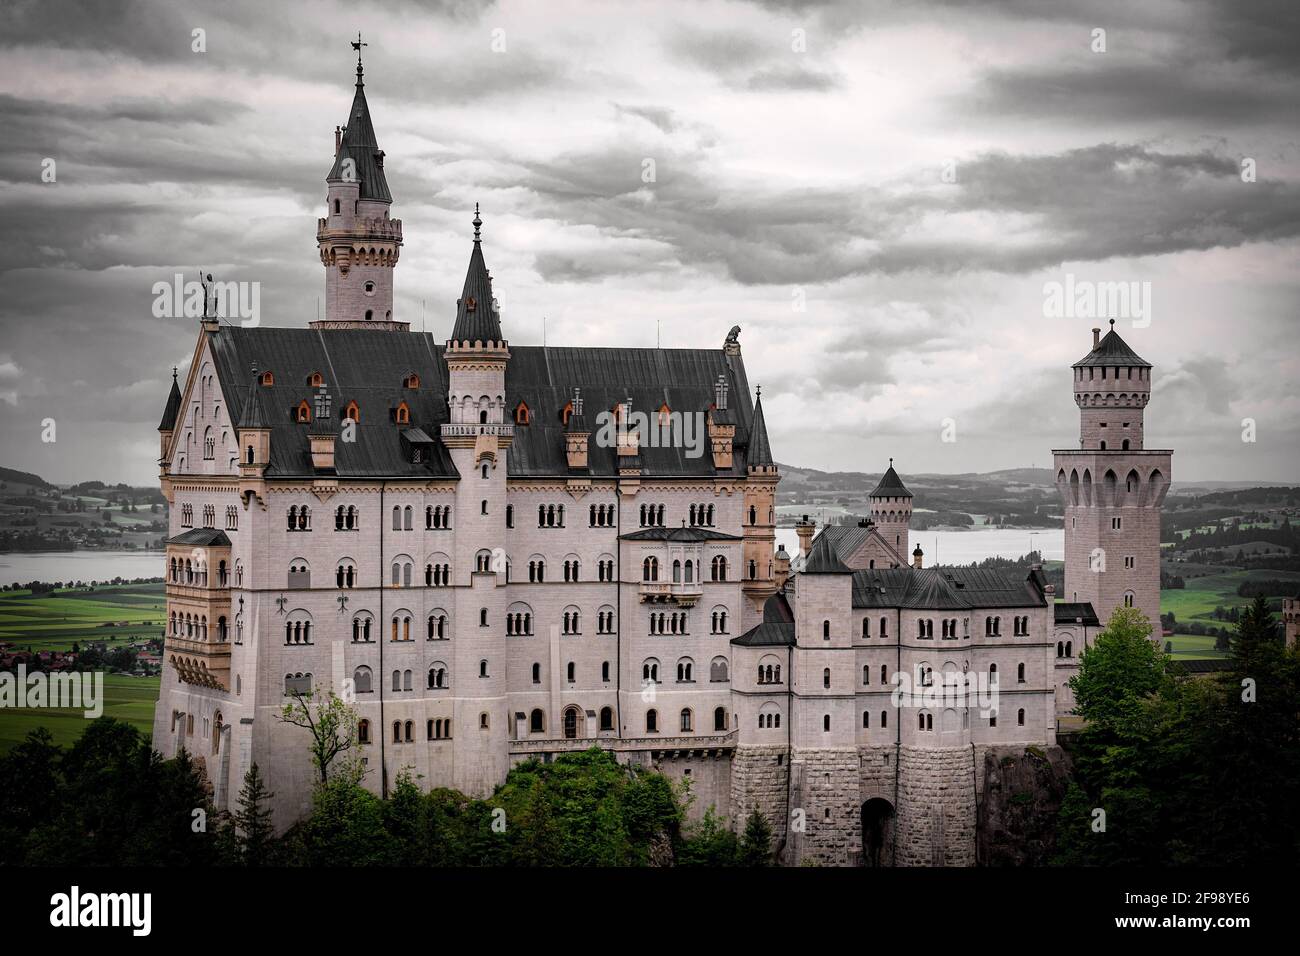 Berühmtes Schloss Neuschwanstein in Bayern Deutschland - Reisefotografie Stockfoto